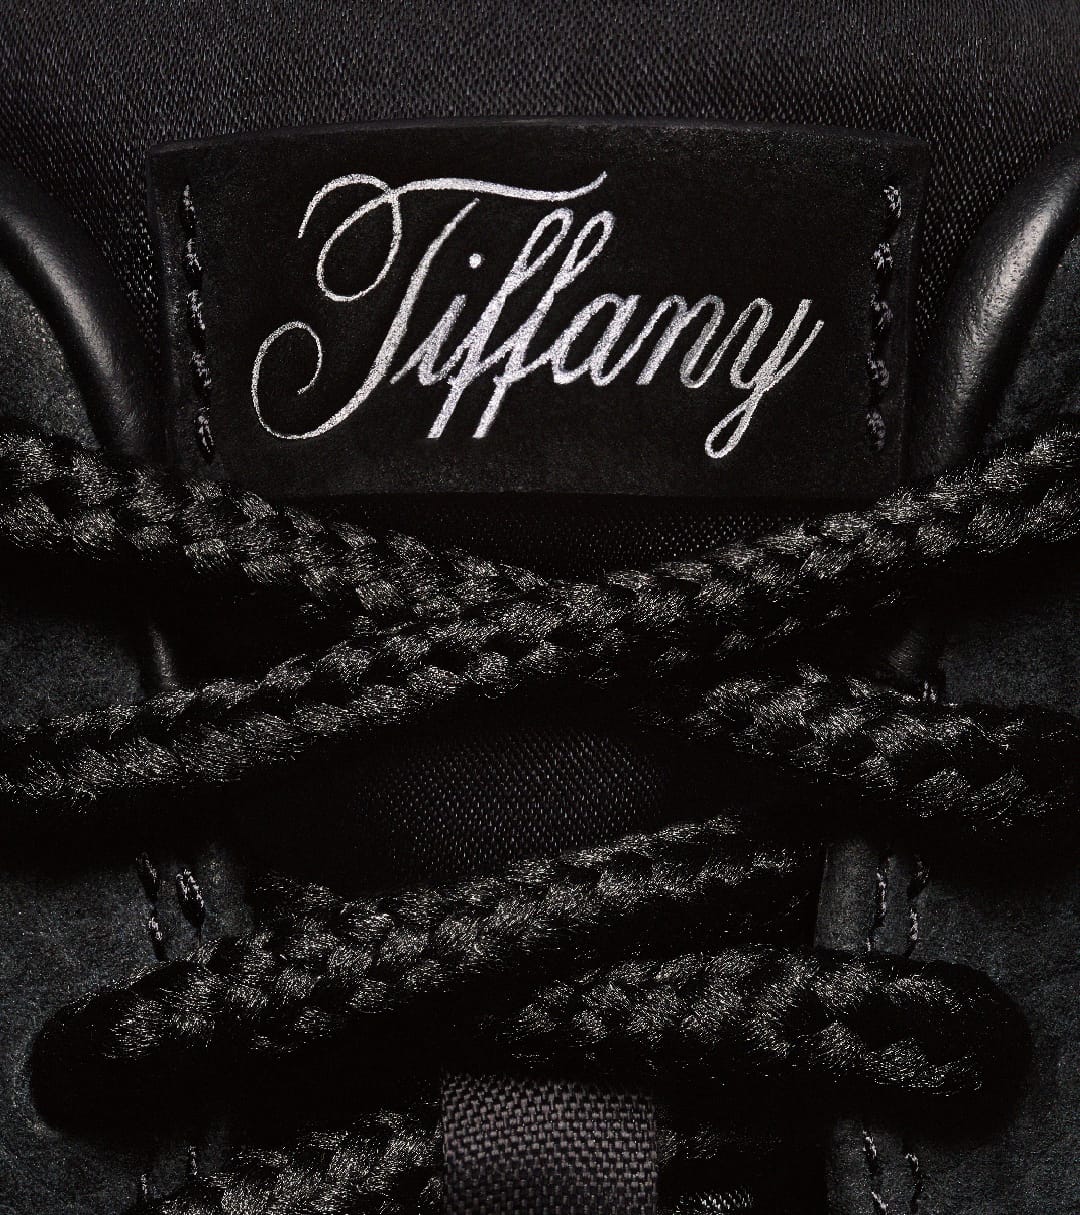 AF 1 x Tiffany & Co. (1:1 Batch)